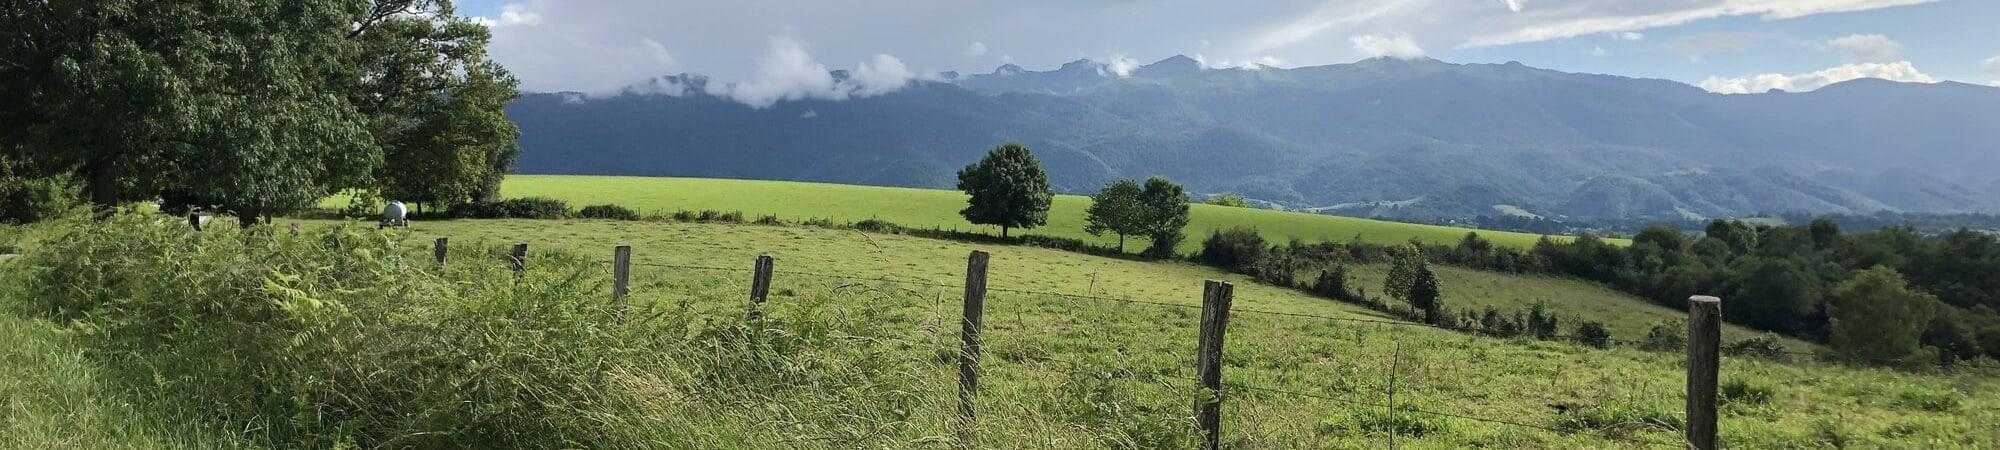 Les Pyrénées vu d'un sentier de randonnée de la vallée d'Ossau